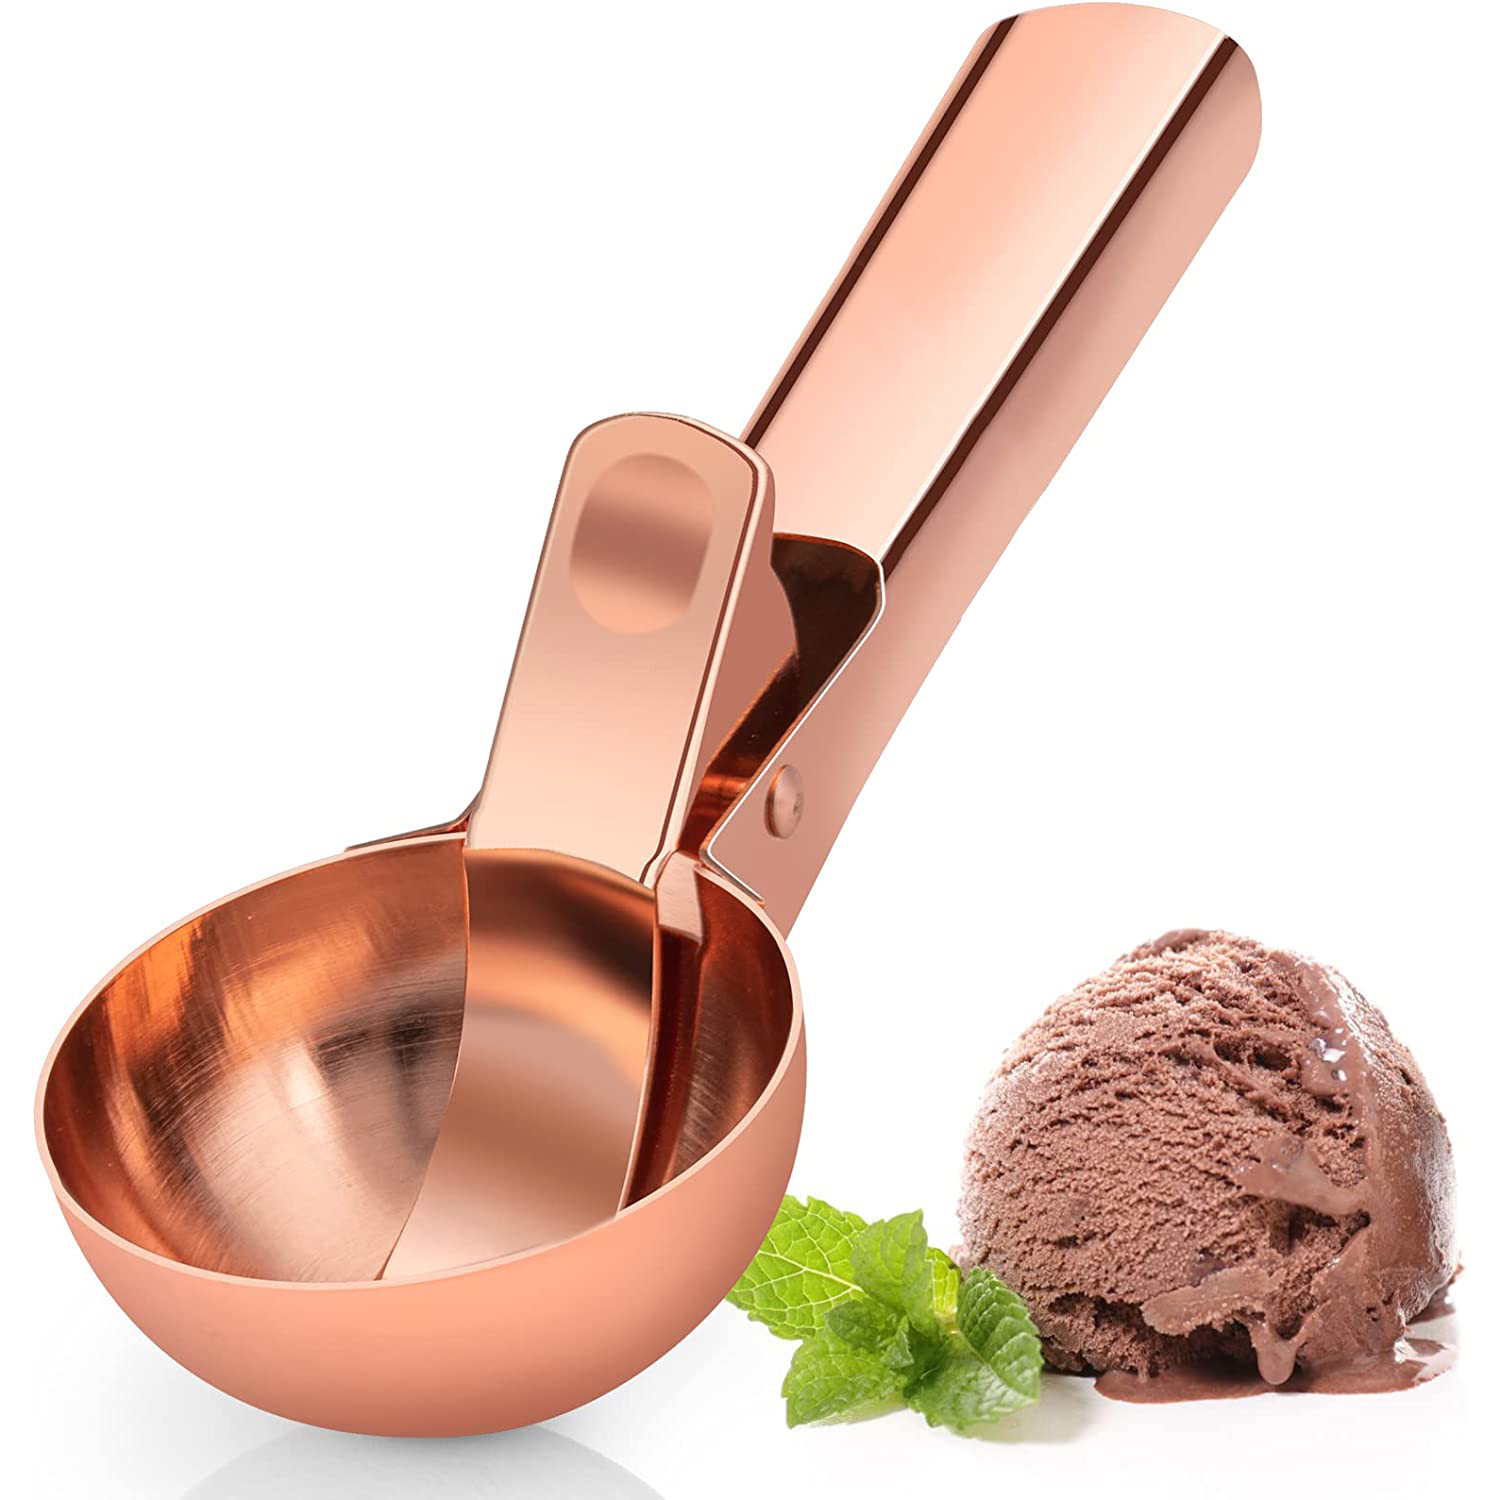 Premium Ice Cream Scoop With Trigger Ice Cream Scooper Stainless